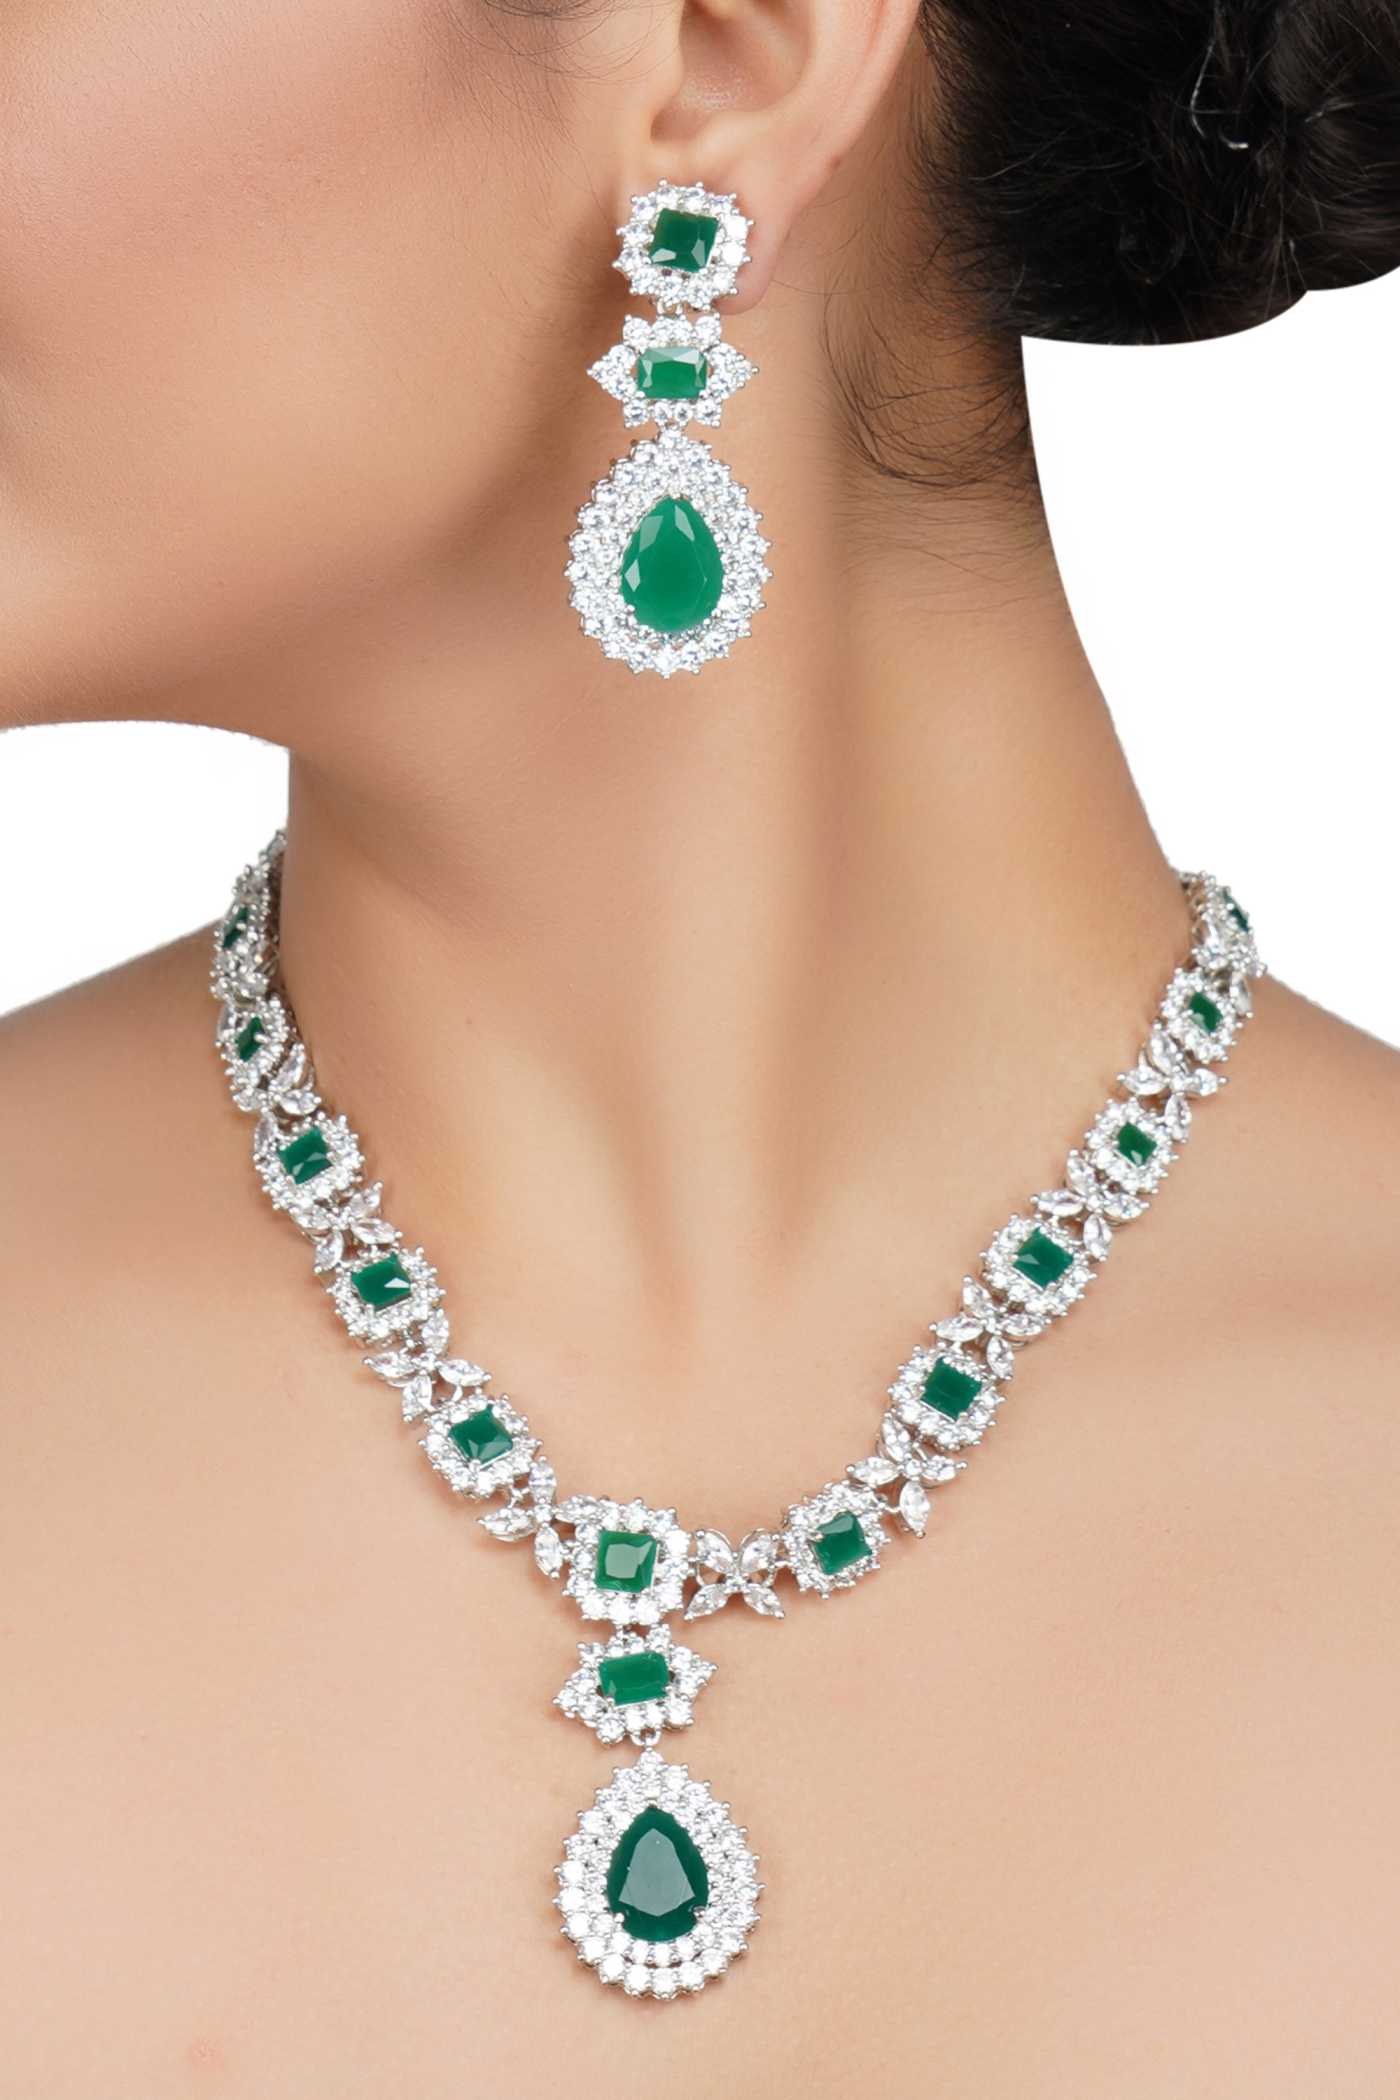 Get Rhodium Finish Diamante Necklace Set Online